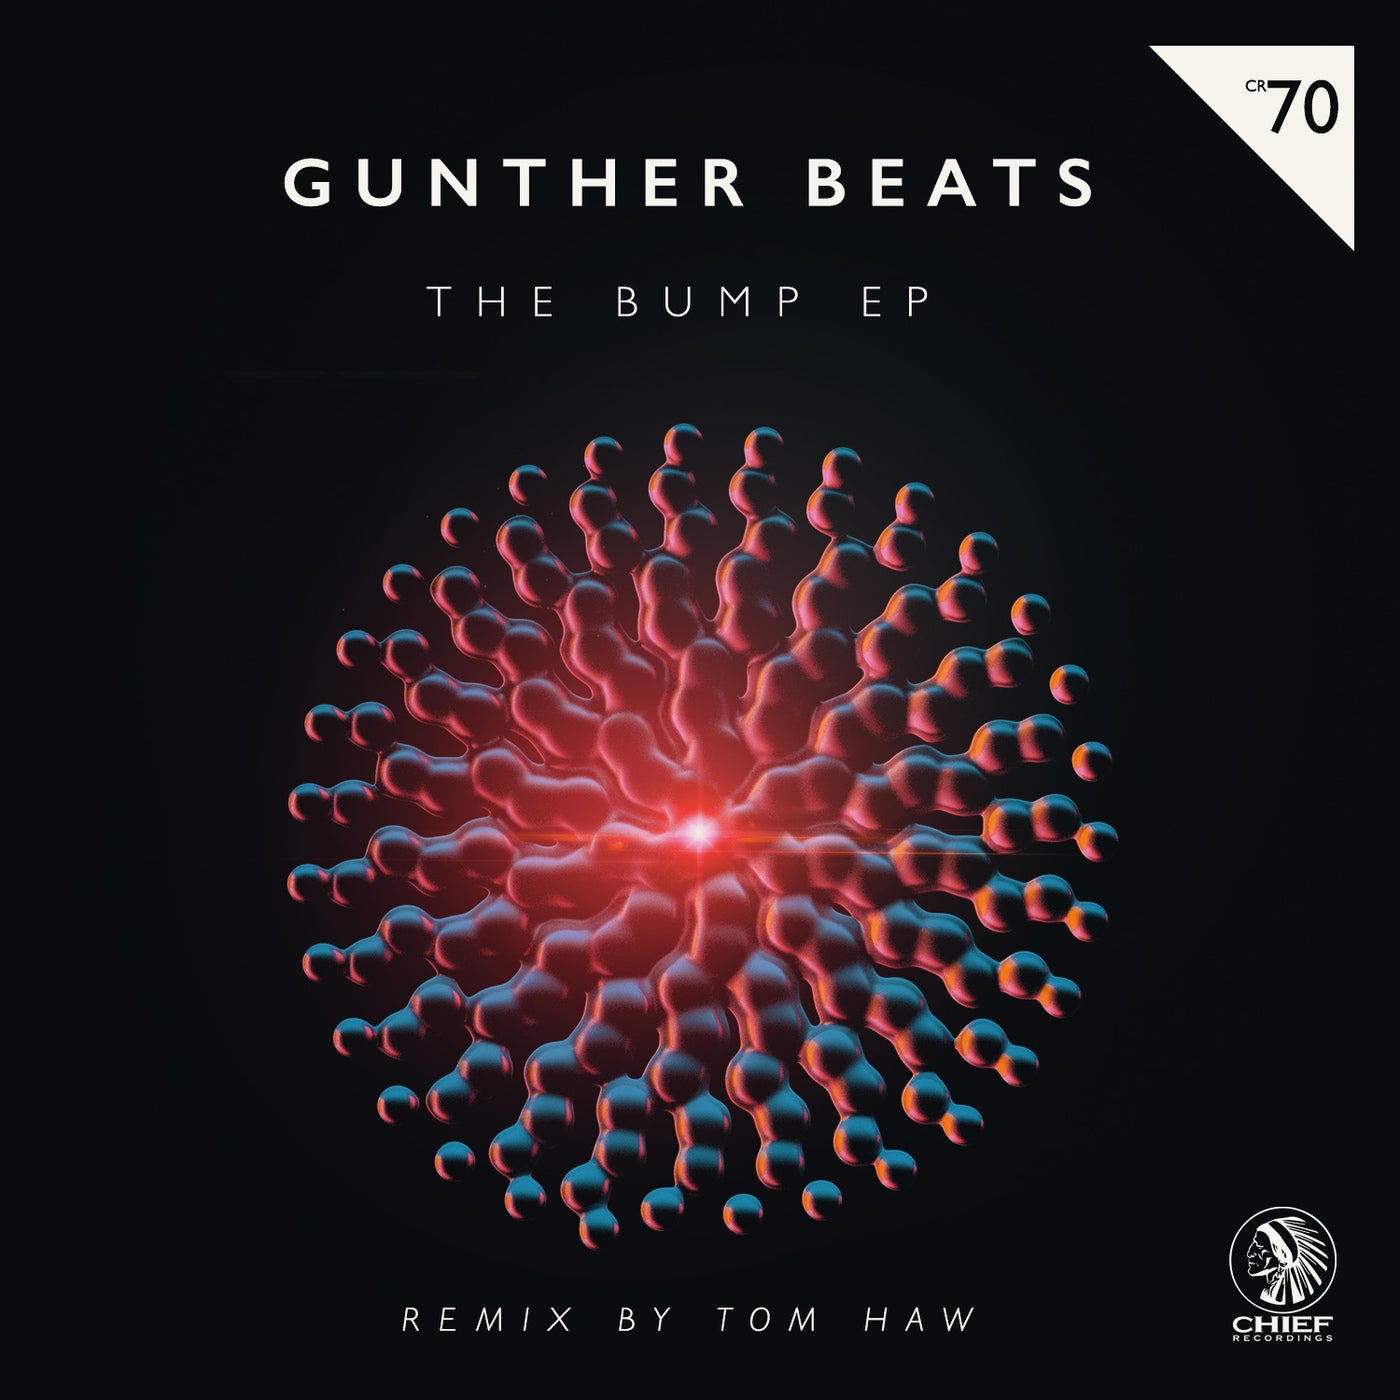 The Bump EP